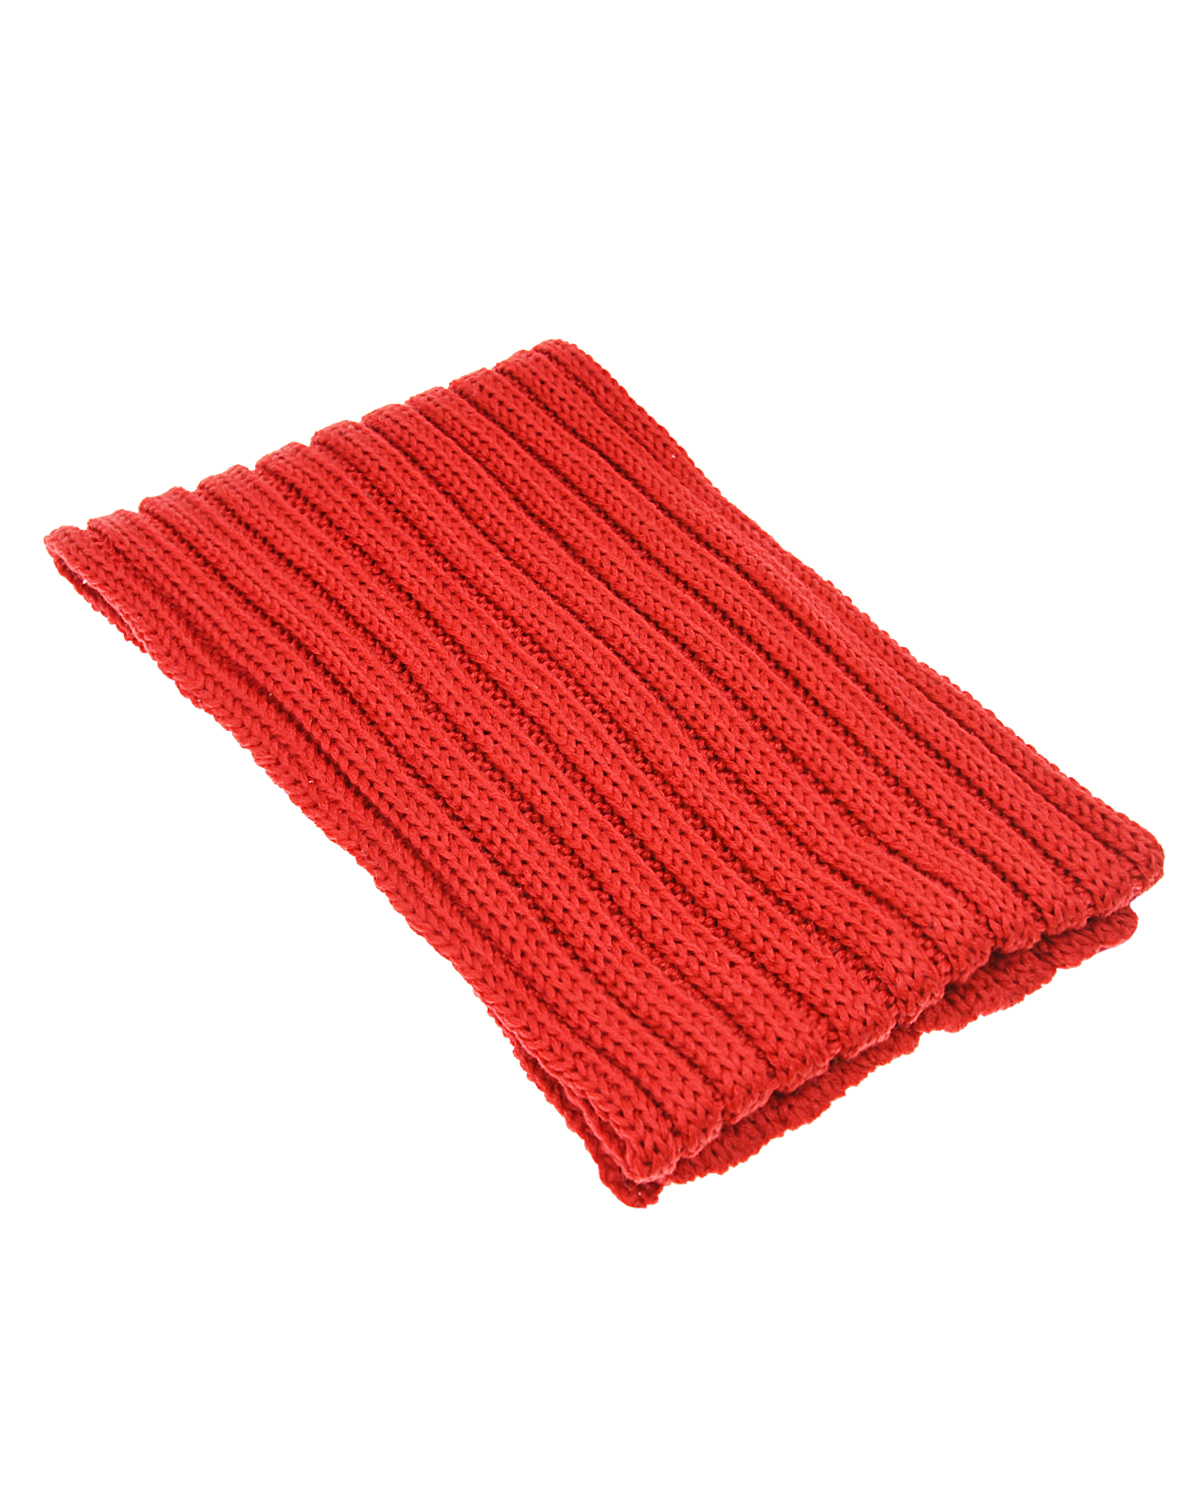 Бордовый шарф из шерсти Catya, размер unica, цвет нет цвета - фото 1